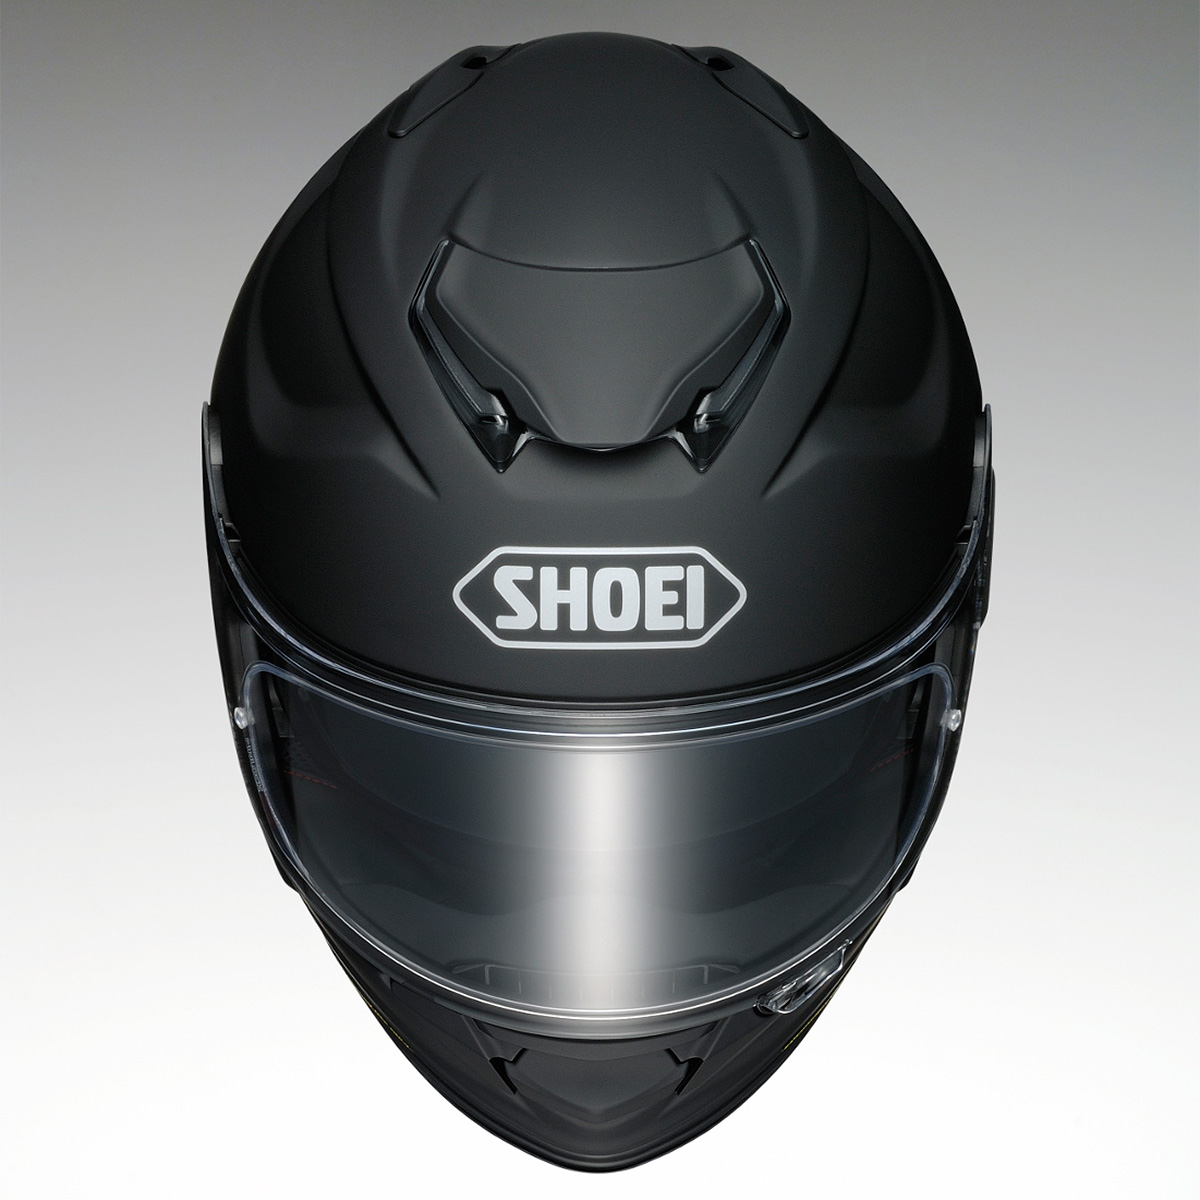 SHOEIのツーリング向けフルフェイスヘルメット“GT-Air”に進化版“GT-AirⅡ”が登場。4月発売予定 | ギア | カワサキイチバン